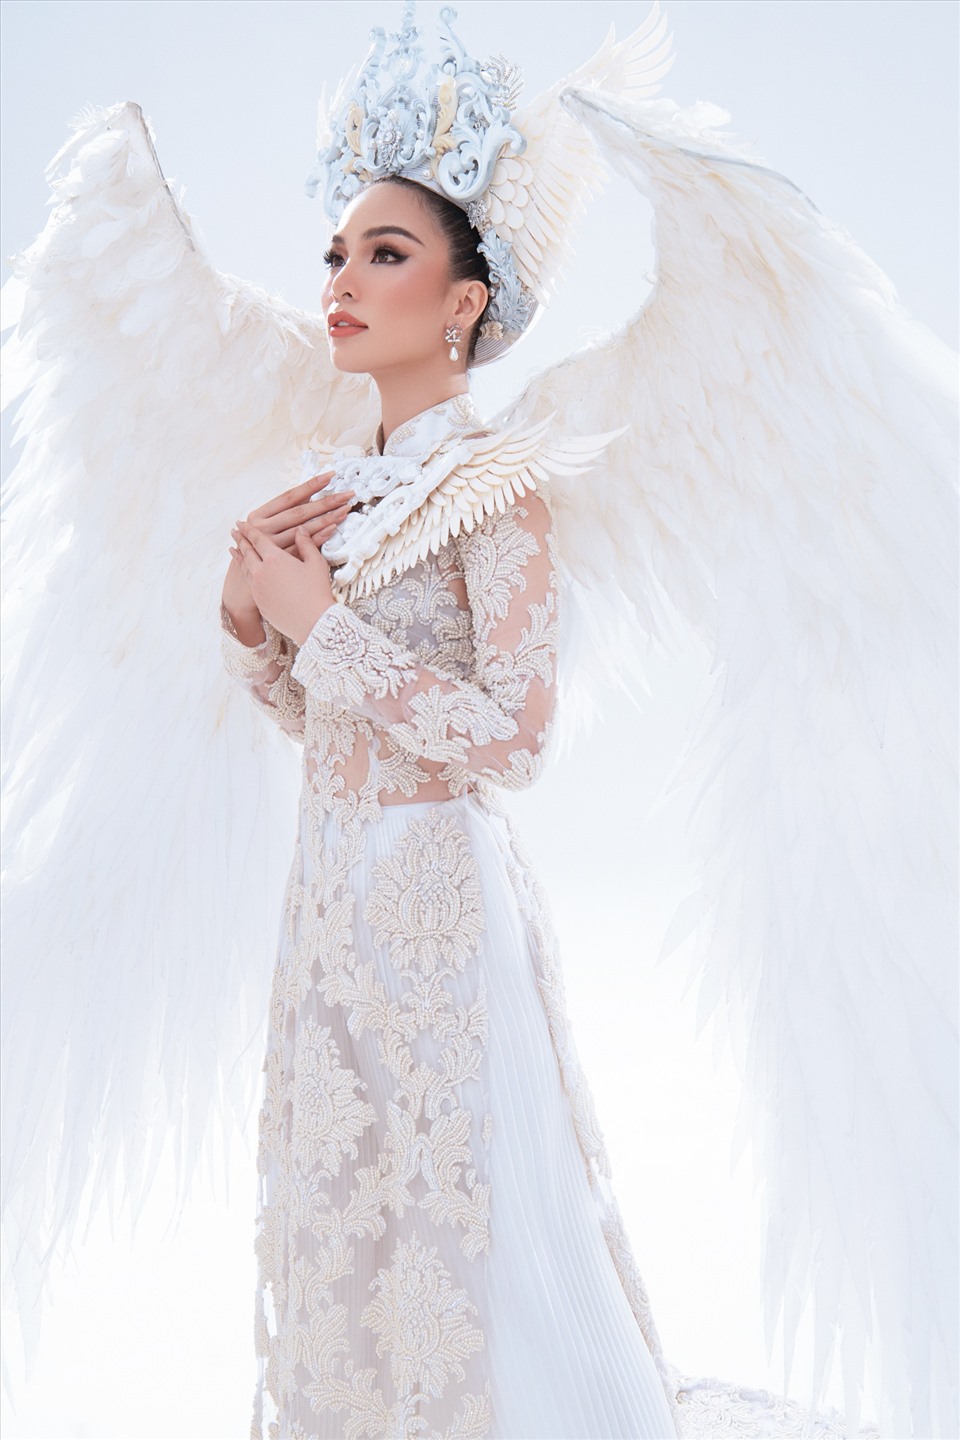 Mới đây, Hoàng Hương Ly chính thức công bố bộ trang phục dân tộc mình sẽ diện để “chiến đấu” tại Miss Tourism International 2021 mang tên: “Cánh chim hòa bình”